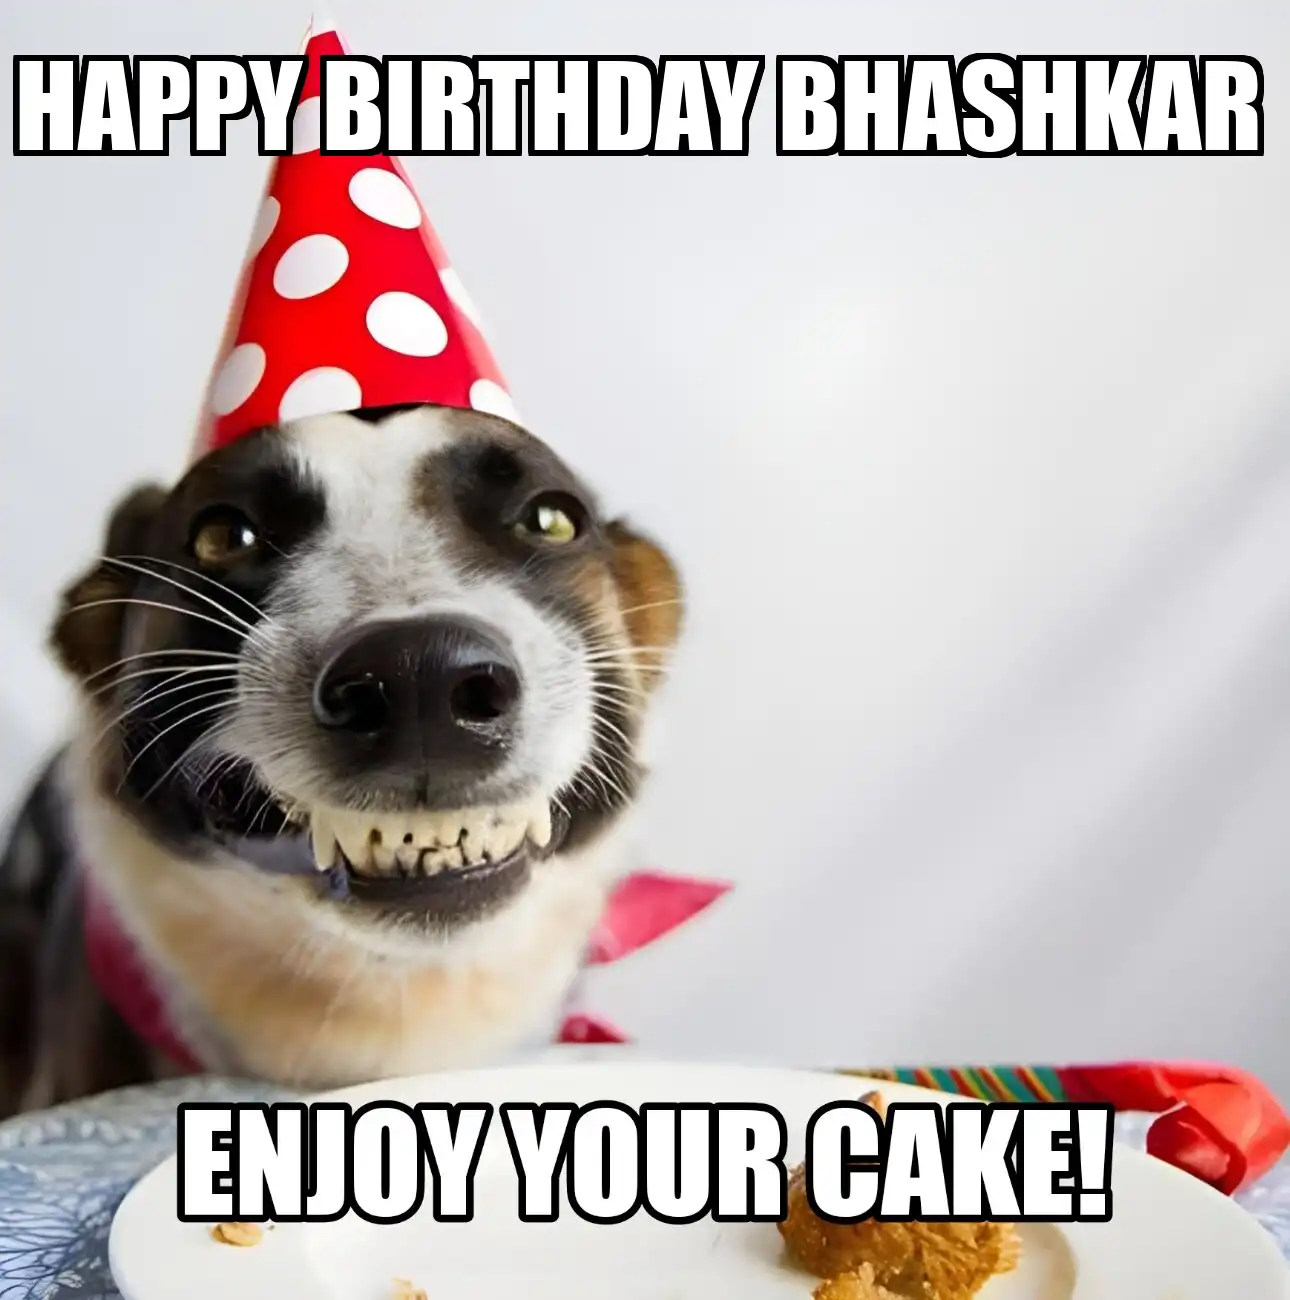 Happy Birthday Bhashkar Enjoy Your Cake Dog Meme